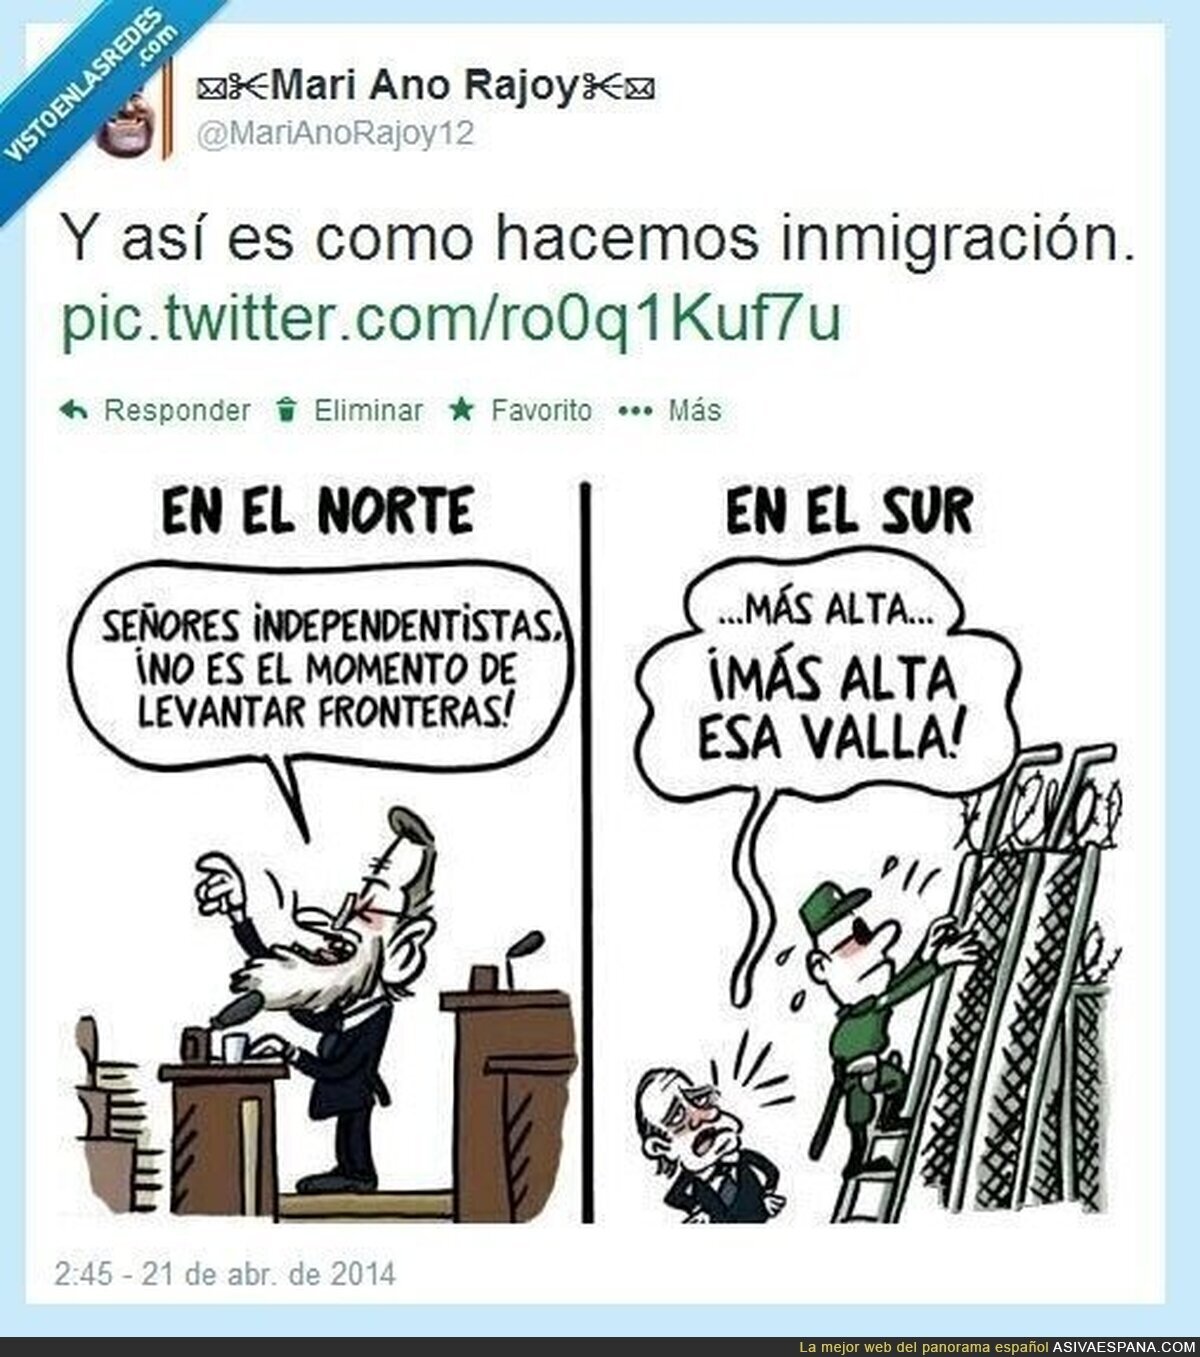 Y así es como se gestionan los problemas en España por @MariAnoRajoy12